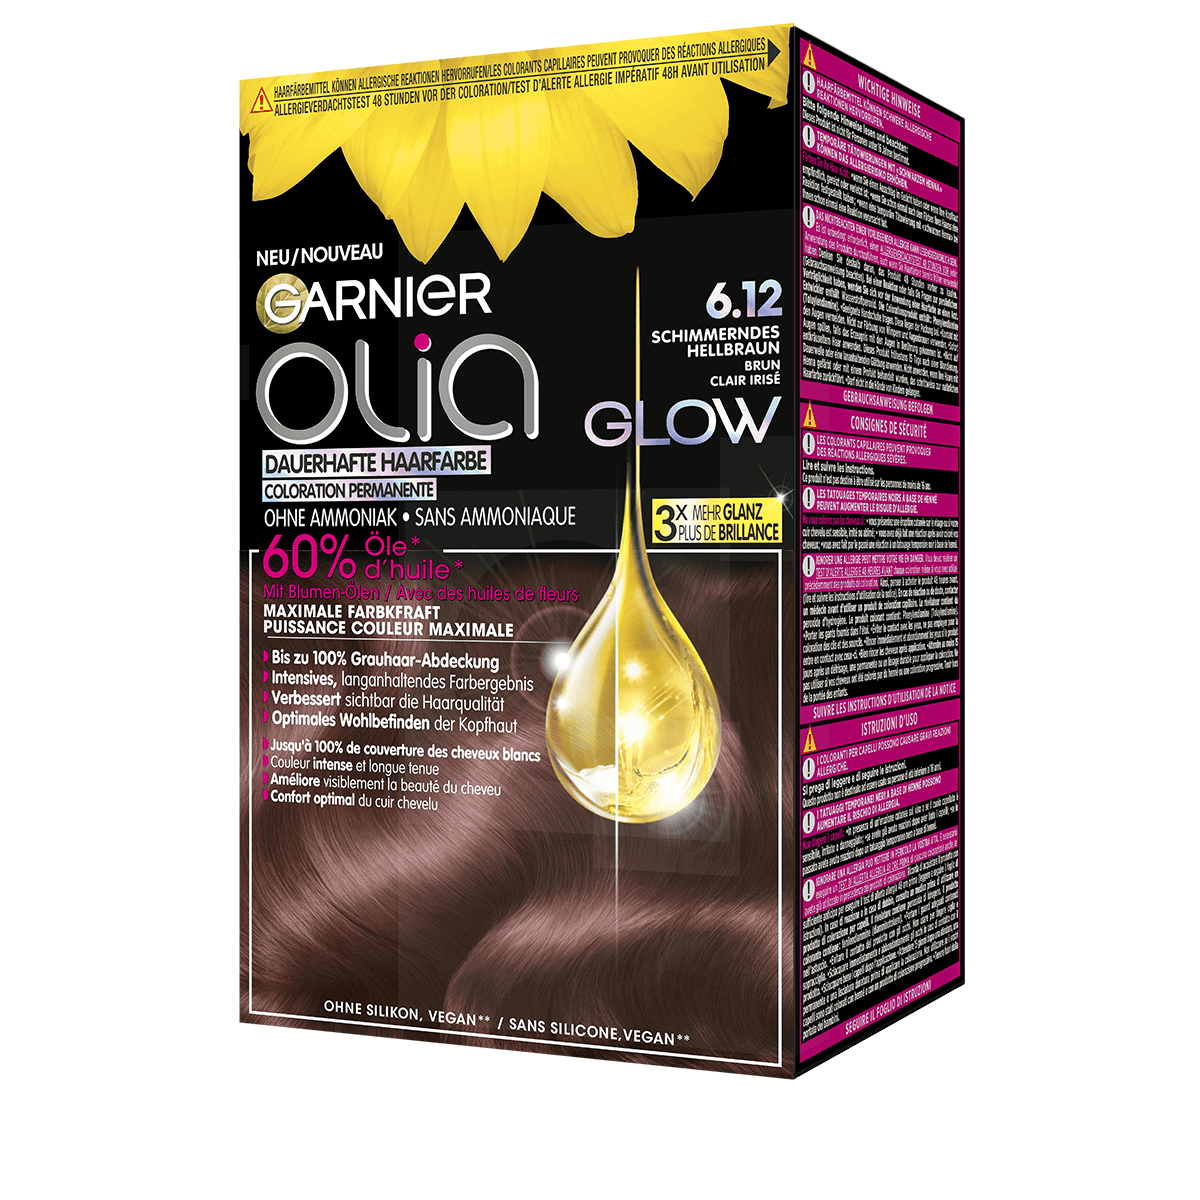 6.12 hair Garnier colour Glow • - Permanent